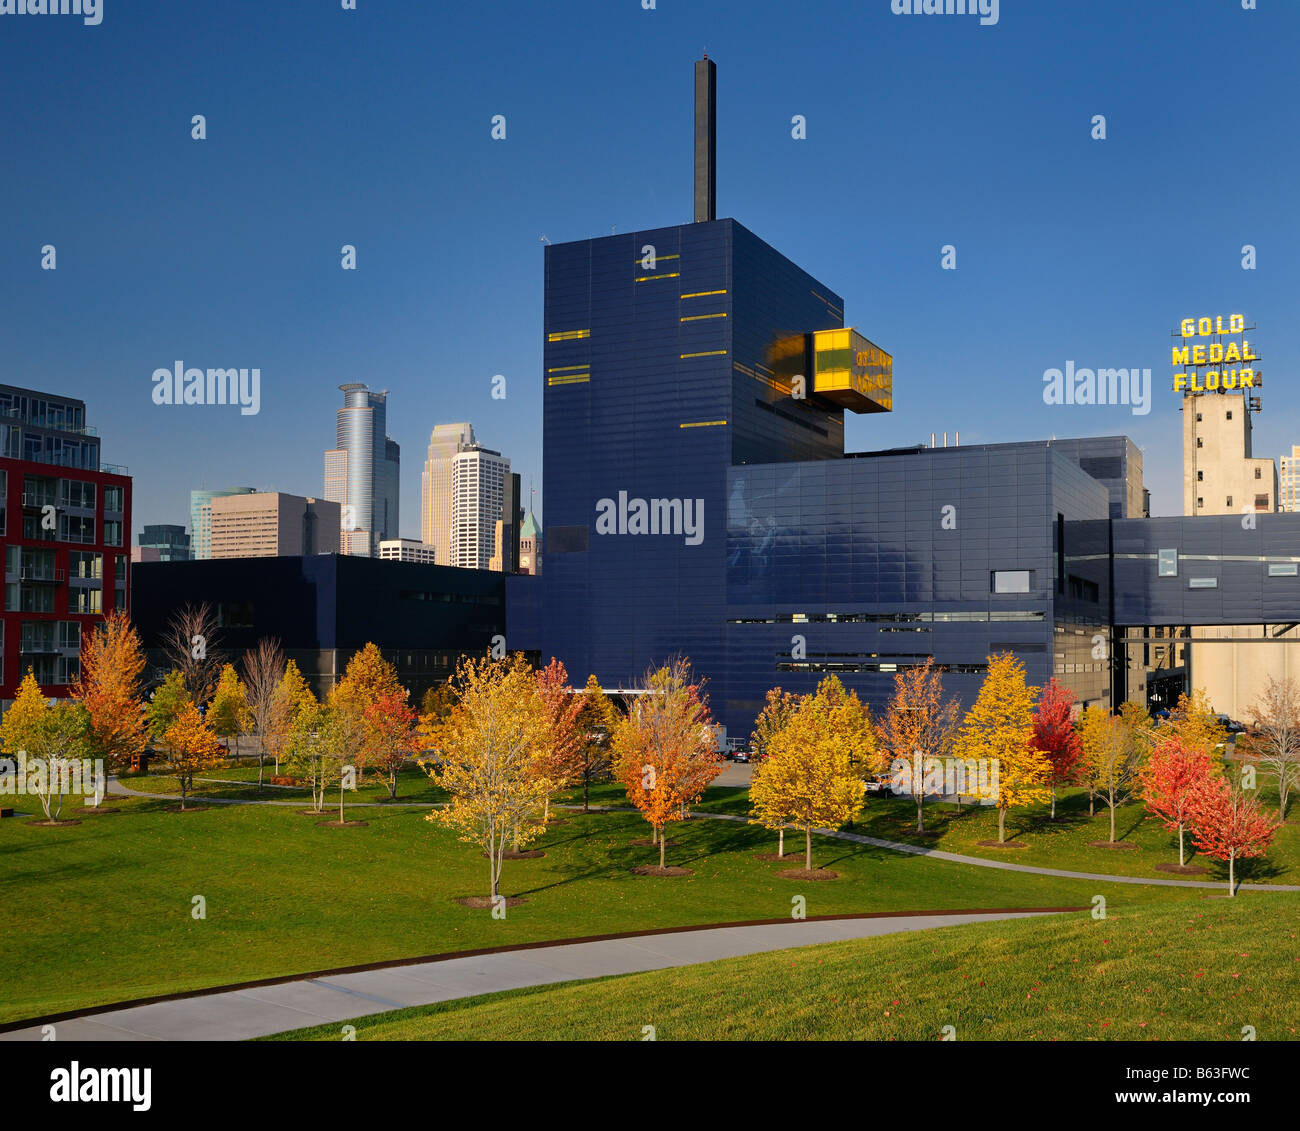 Colorato alberi di acero al Guthrie Theater di Minneapolis con medaglia d oro farina silos in autunno Foto Stock